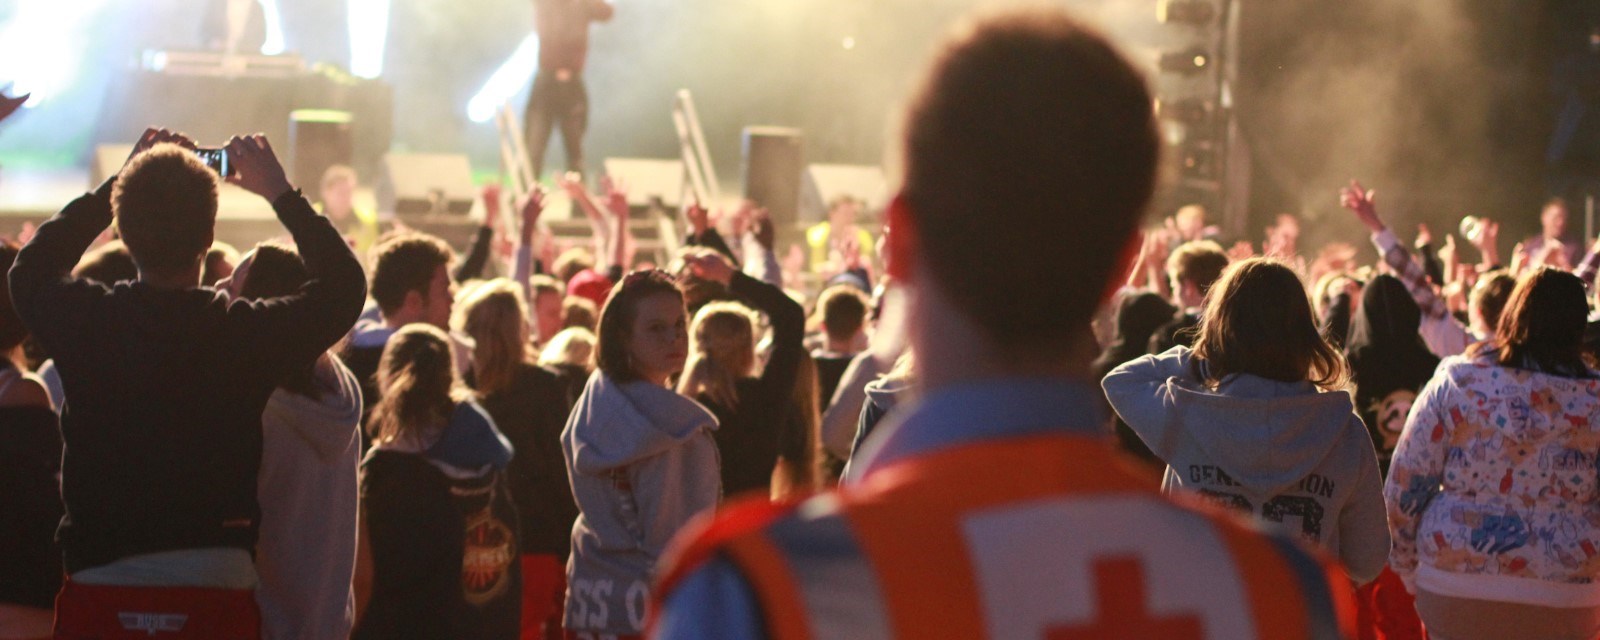 En hjelpekorpser med refleksvest med rødt kors på ryggen ser på en konsert med en stor menneskemengde foran scenen